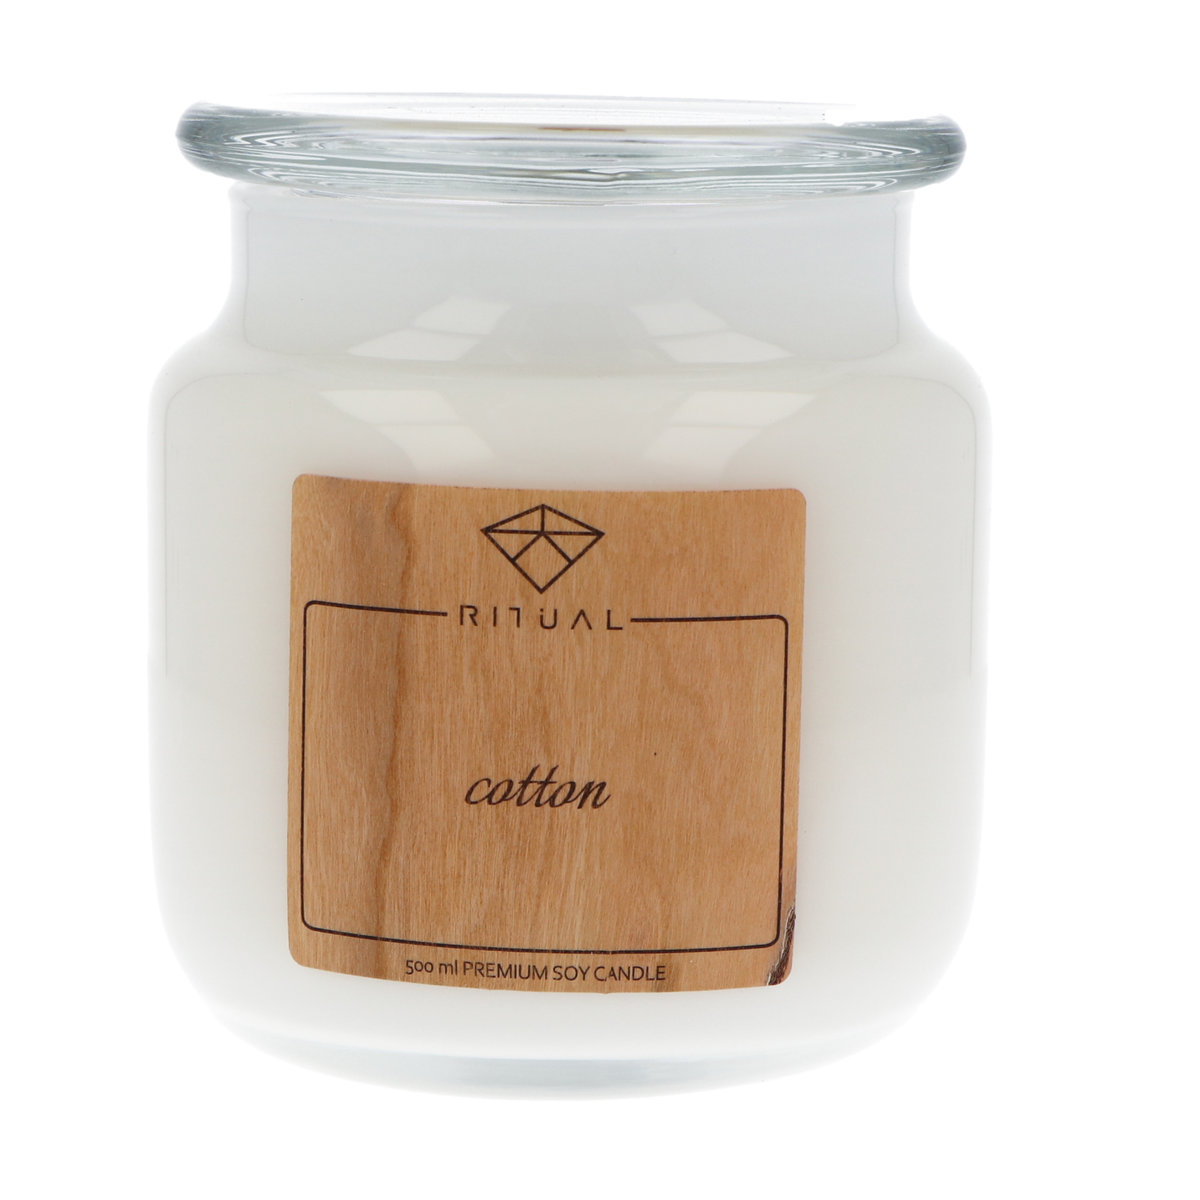 Zapachowa świeca sojowa Moma Fragrances, 500 ml o zapachu Cotton